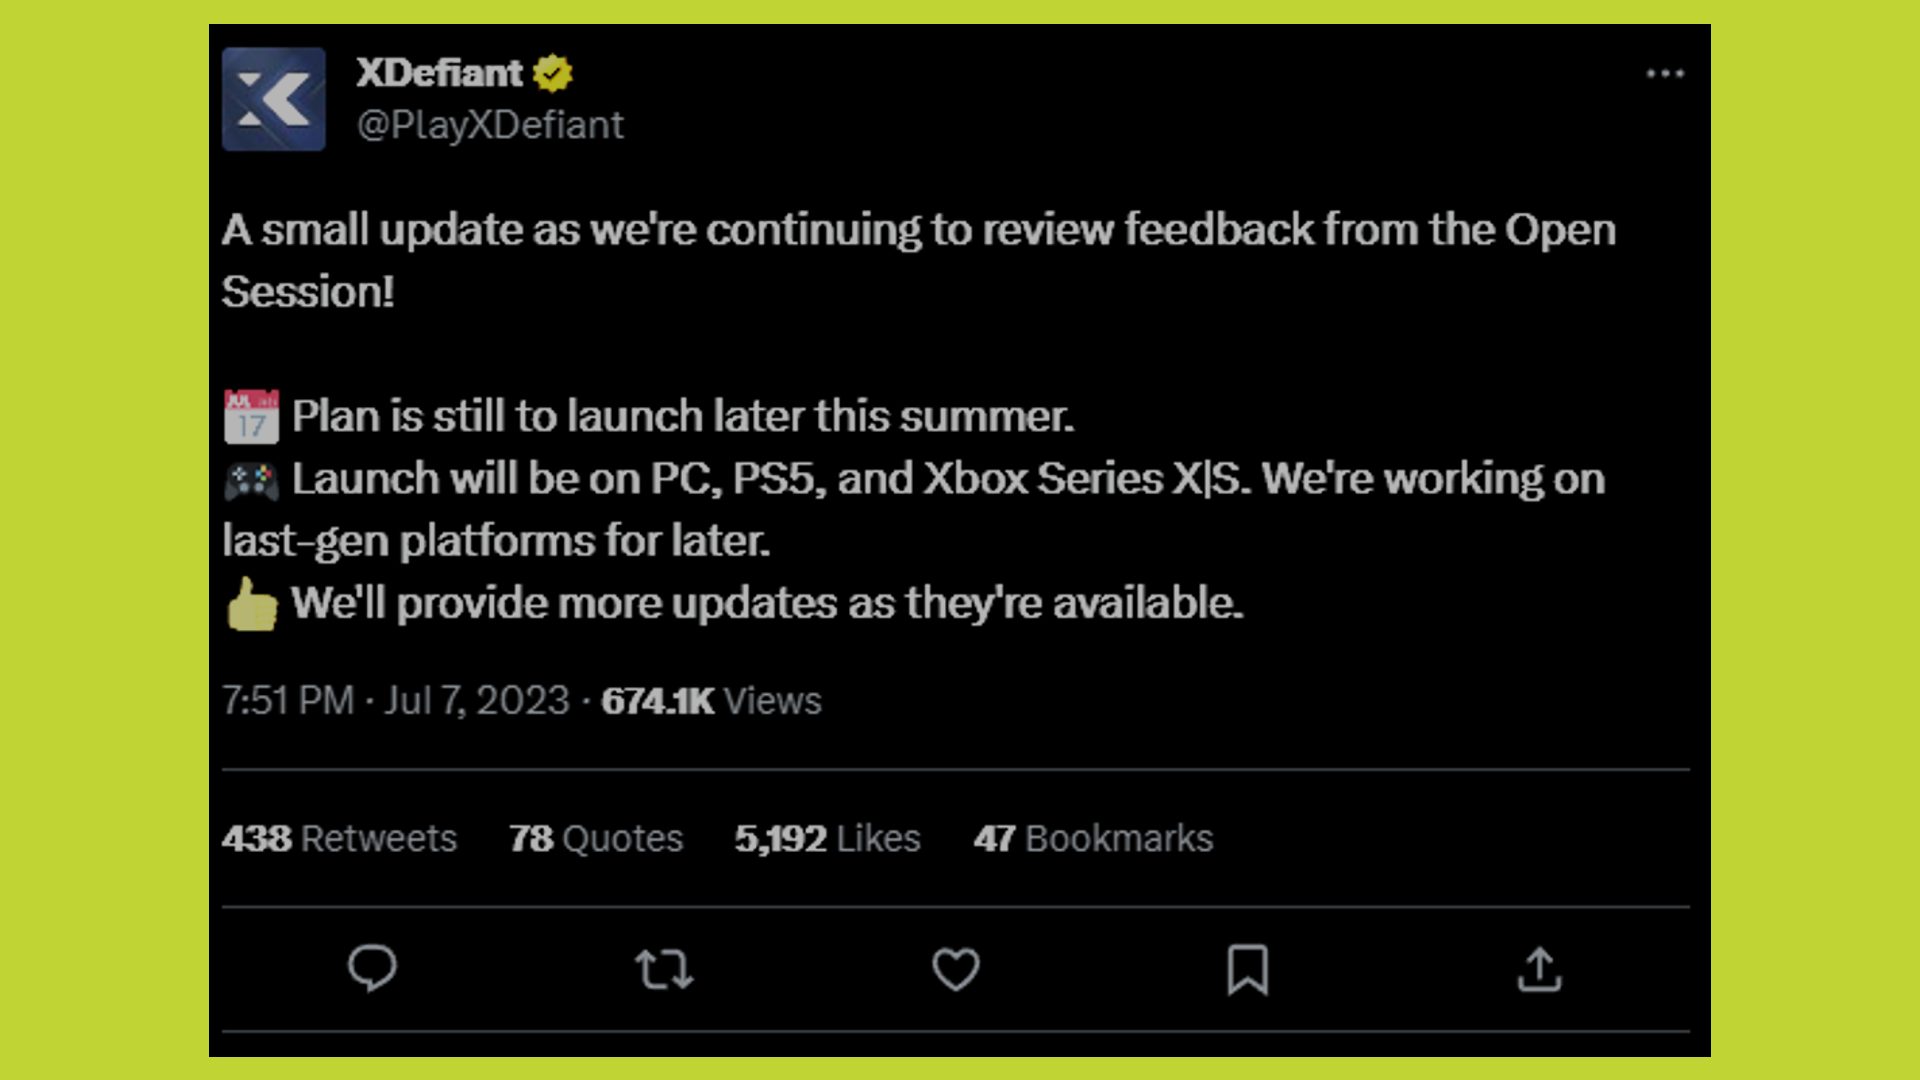 Ngày phát hành XDEFIANT: Có thể nhìn thấy Tweet thông báo độ trễ PS4, Xbox One